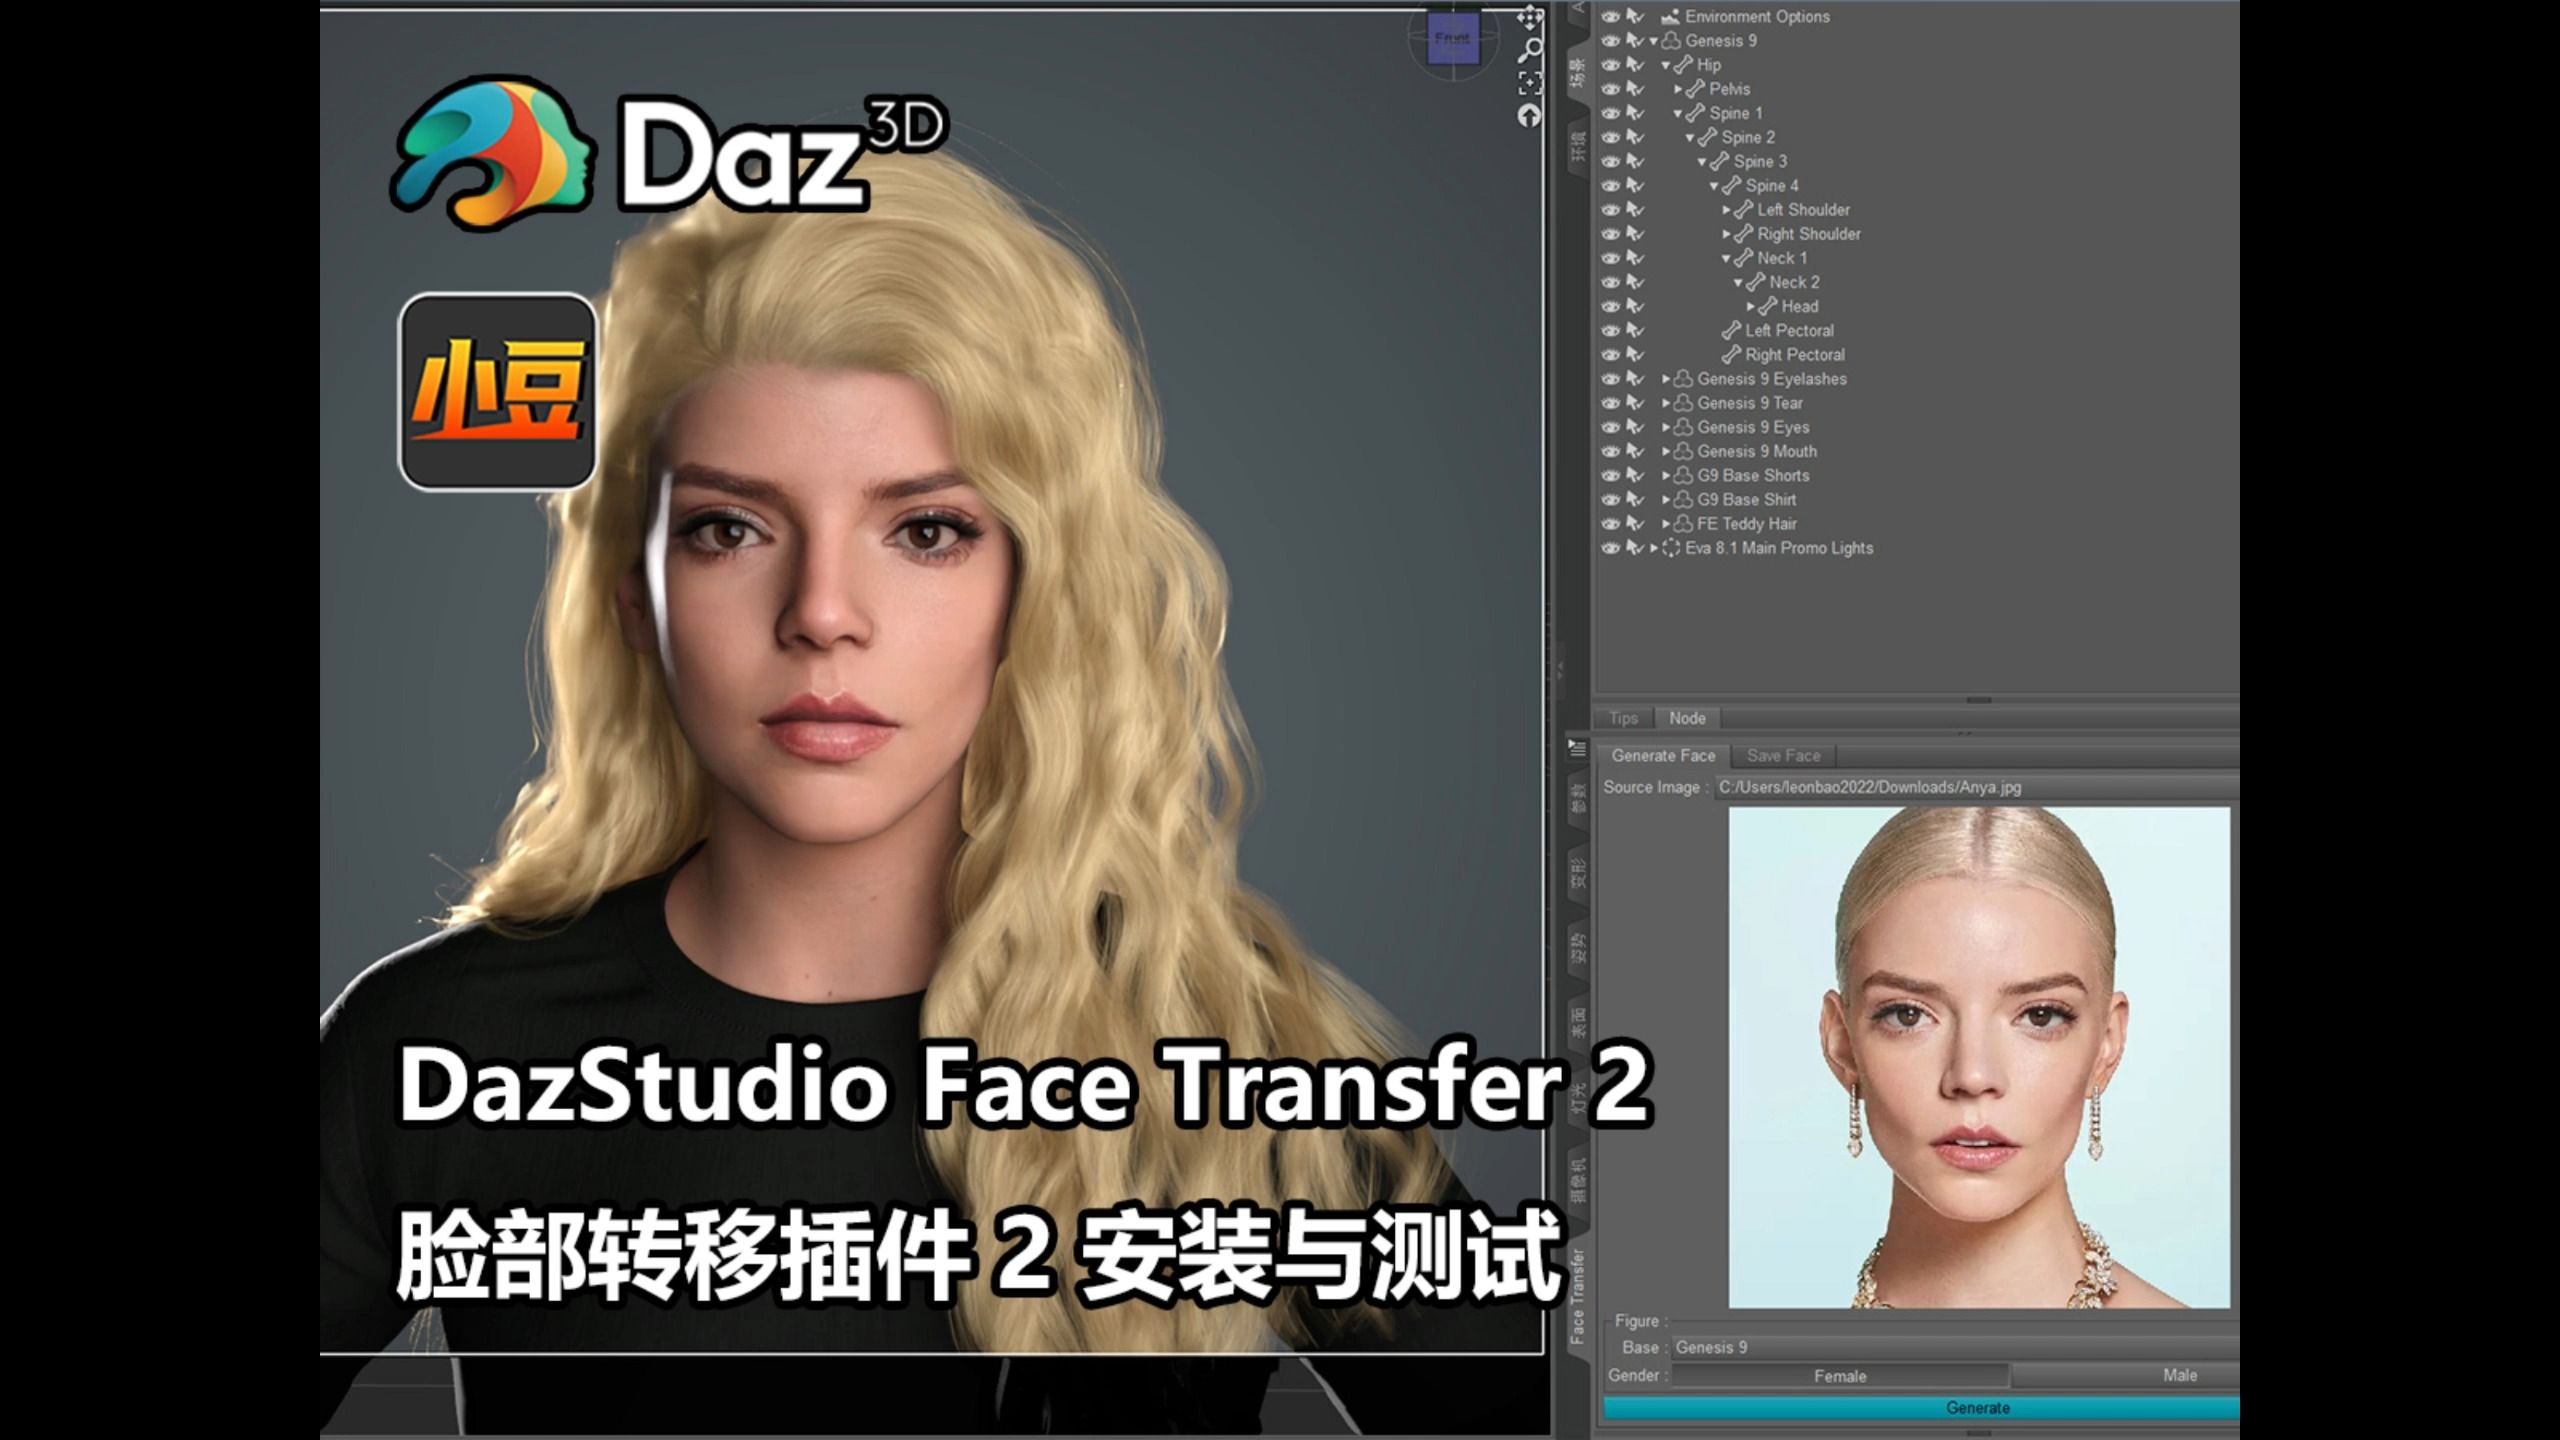 [插件教程] DazStudio Face Transfer 2 脸部照片建模插件 2 安装与测试 By 小豆资源